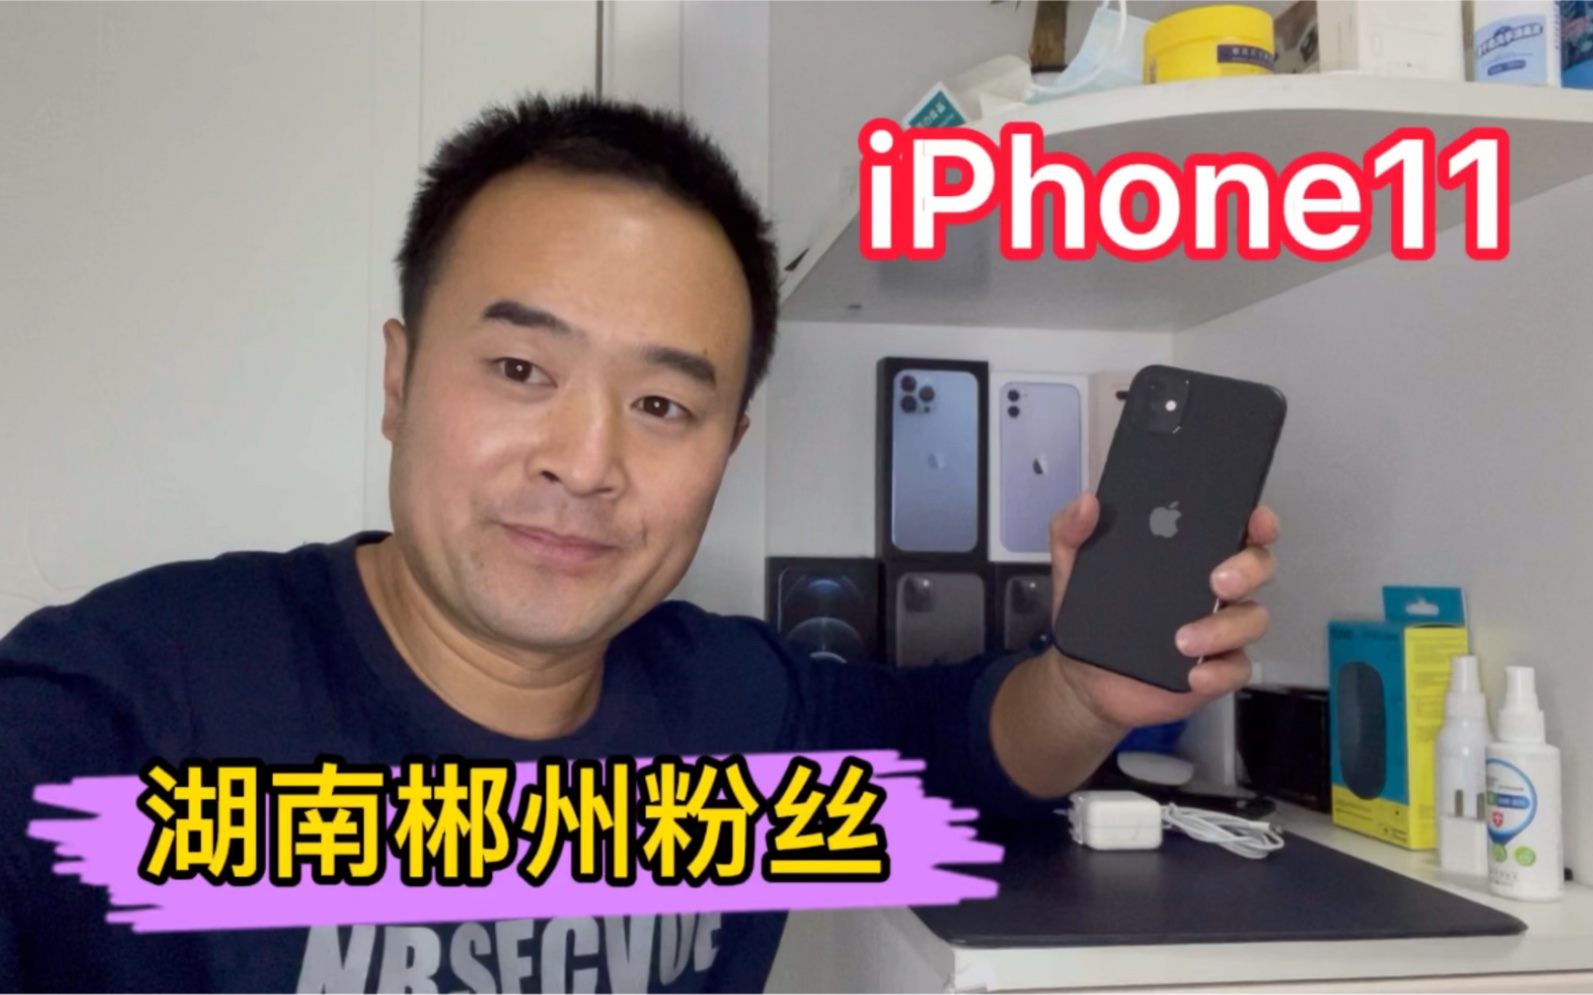 同等价格一个11 128G一个xsmax256G，郴州粉丝选了iPhone11